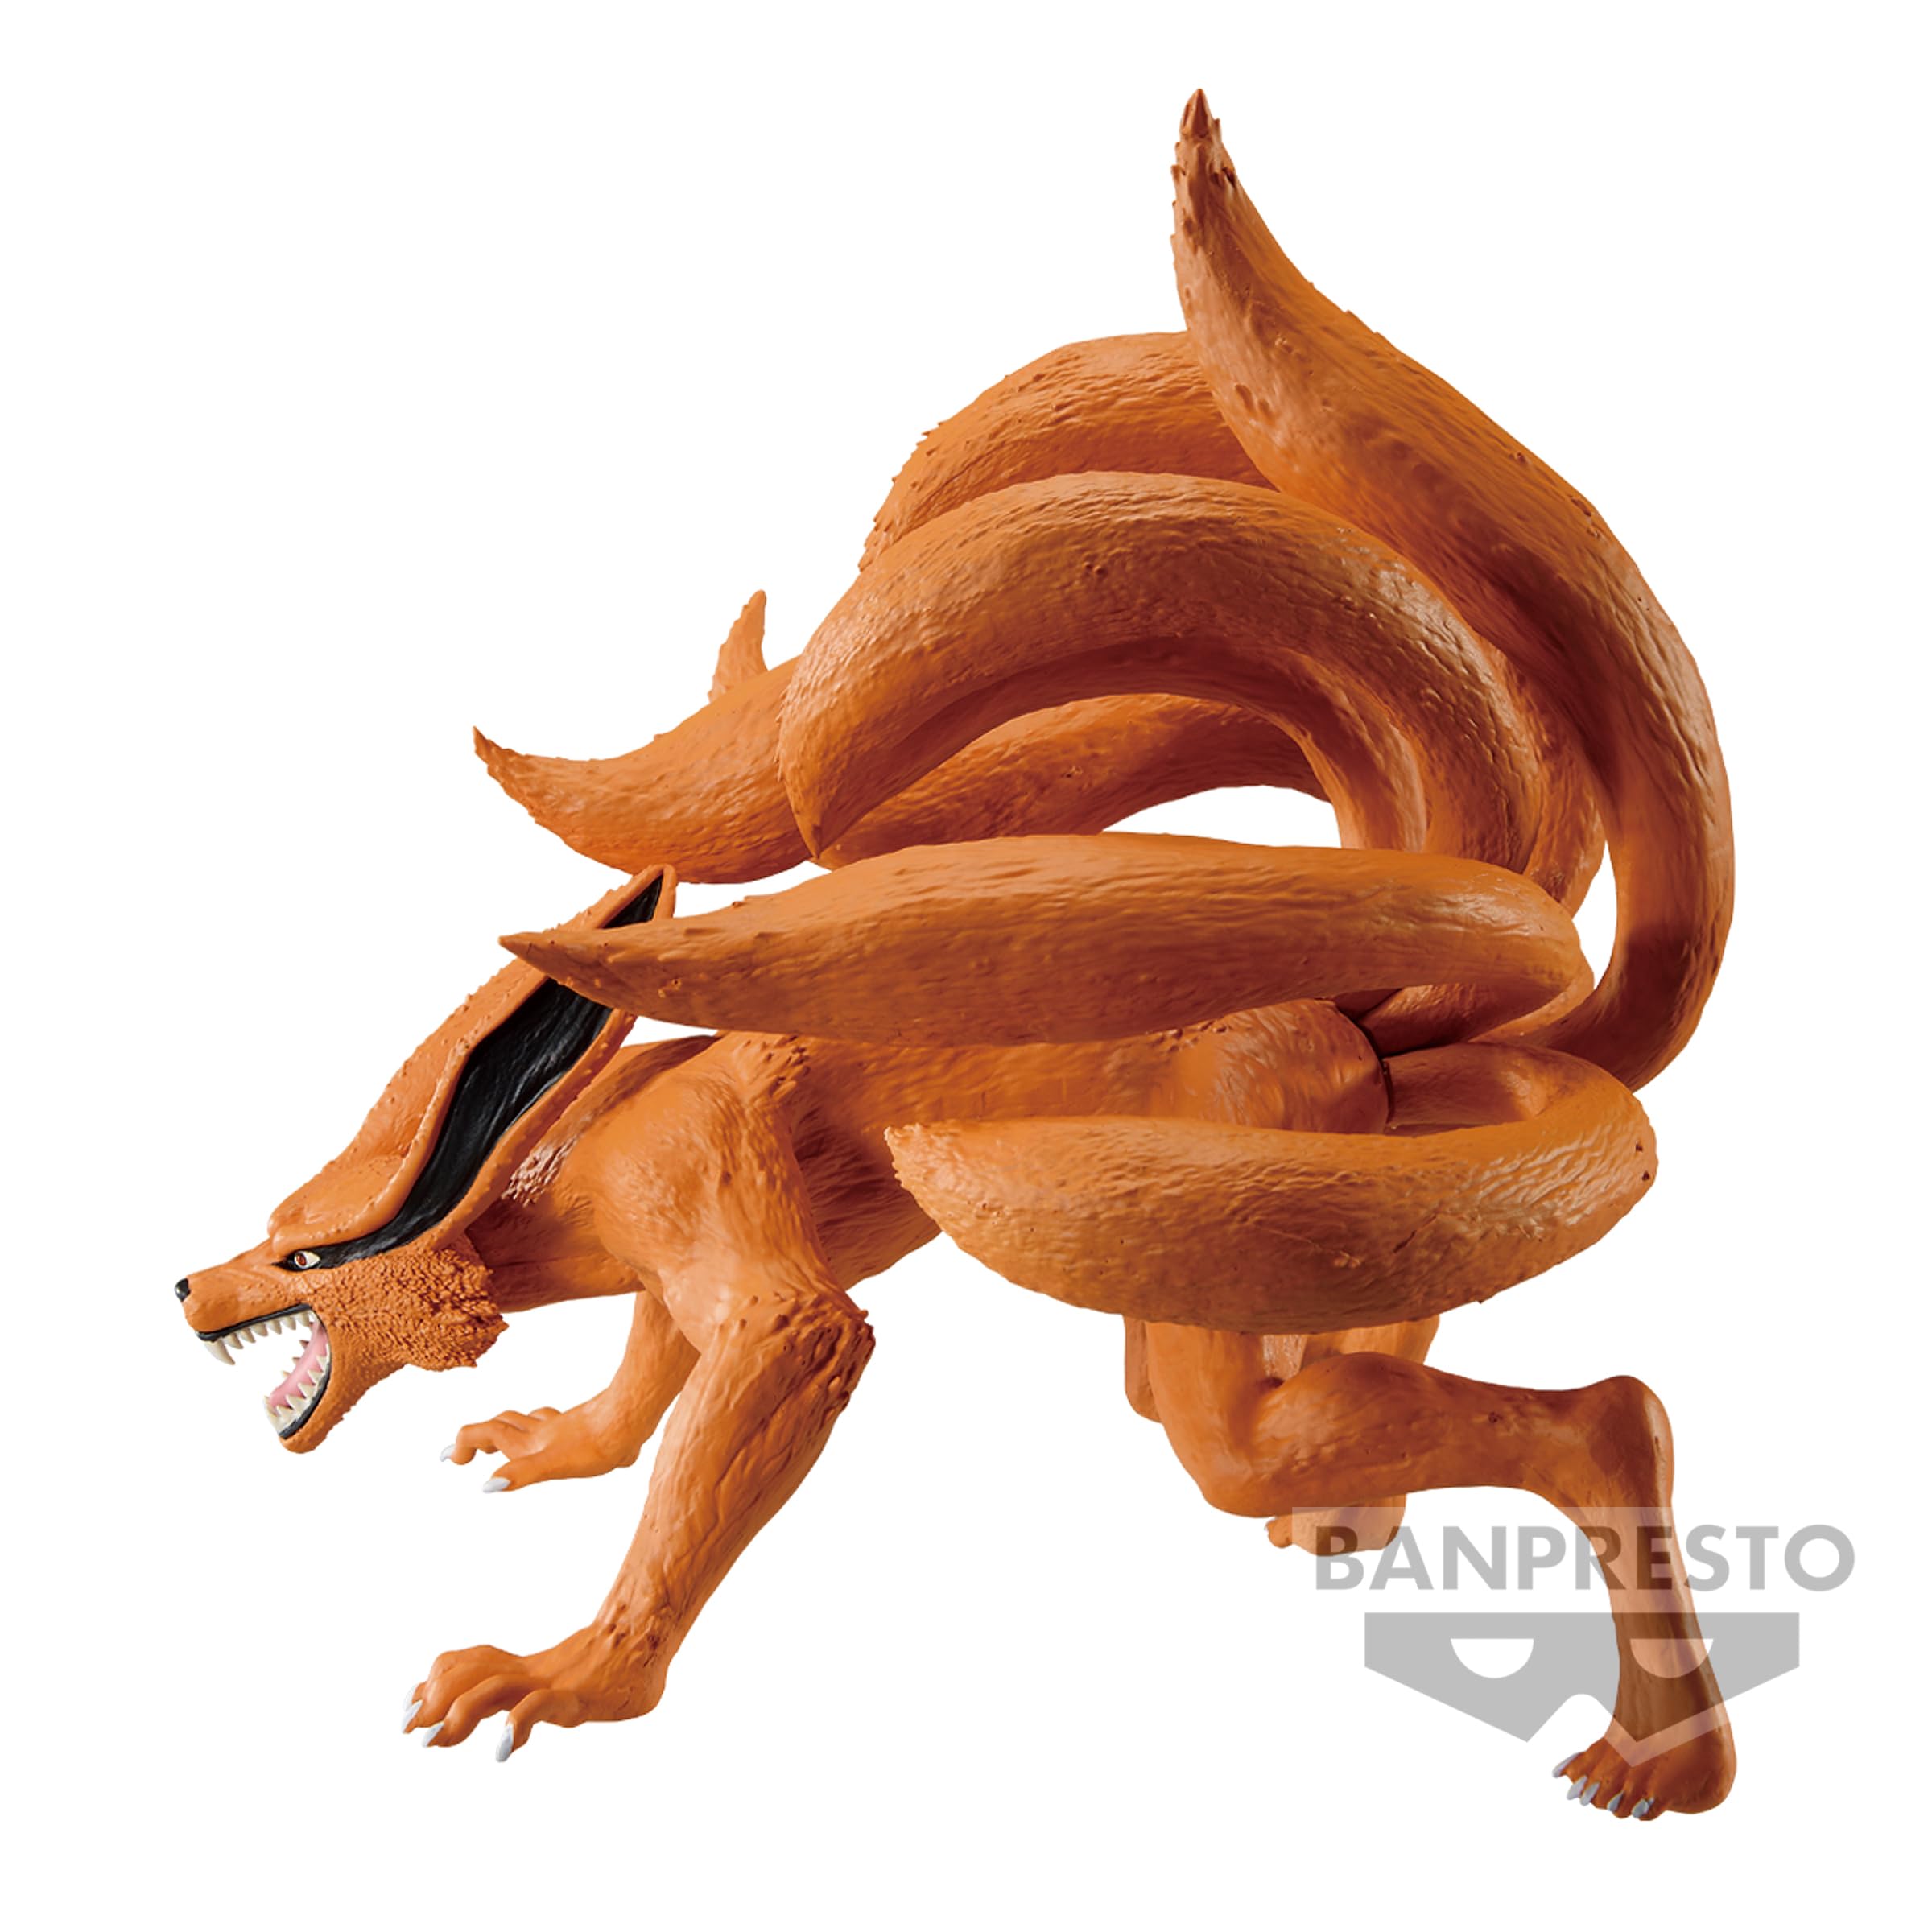 Banpresto - Naruto Shippuden - Kurama (ver. A), Bandai Spirits Figure